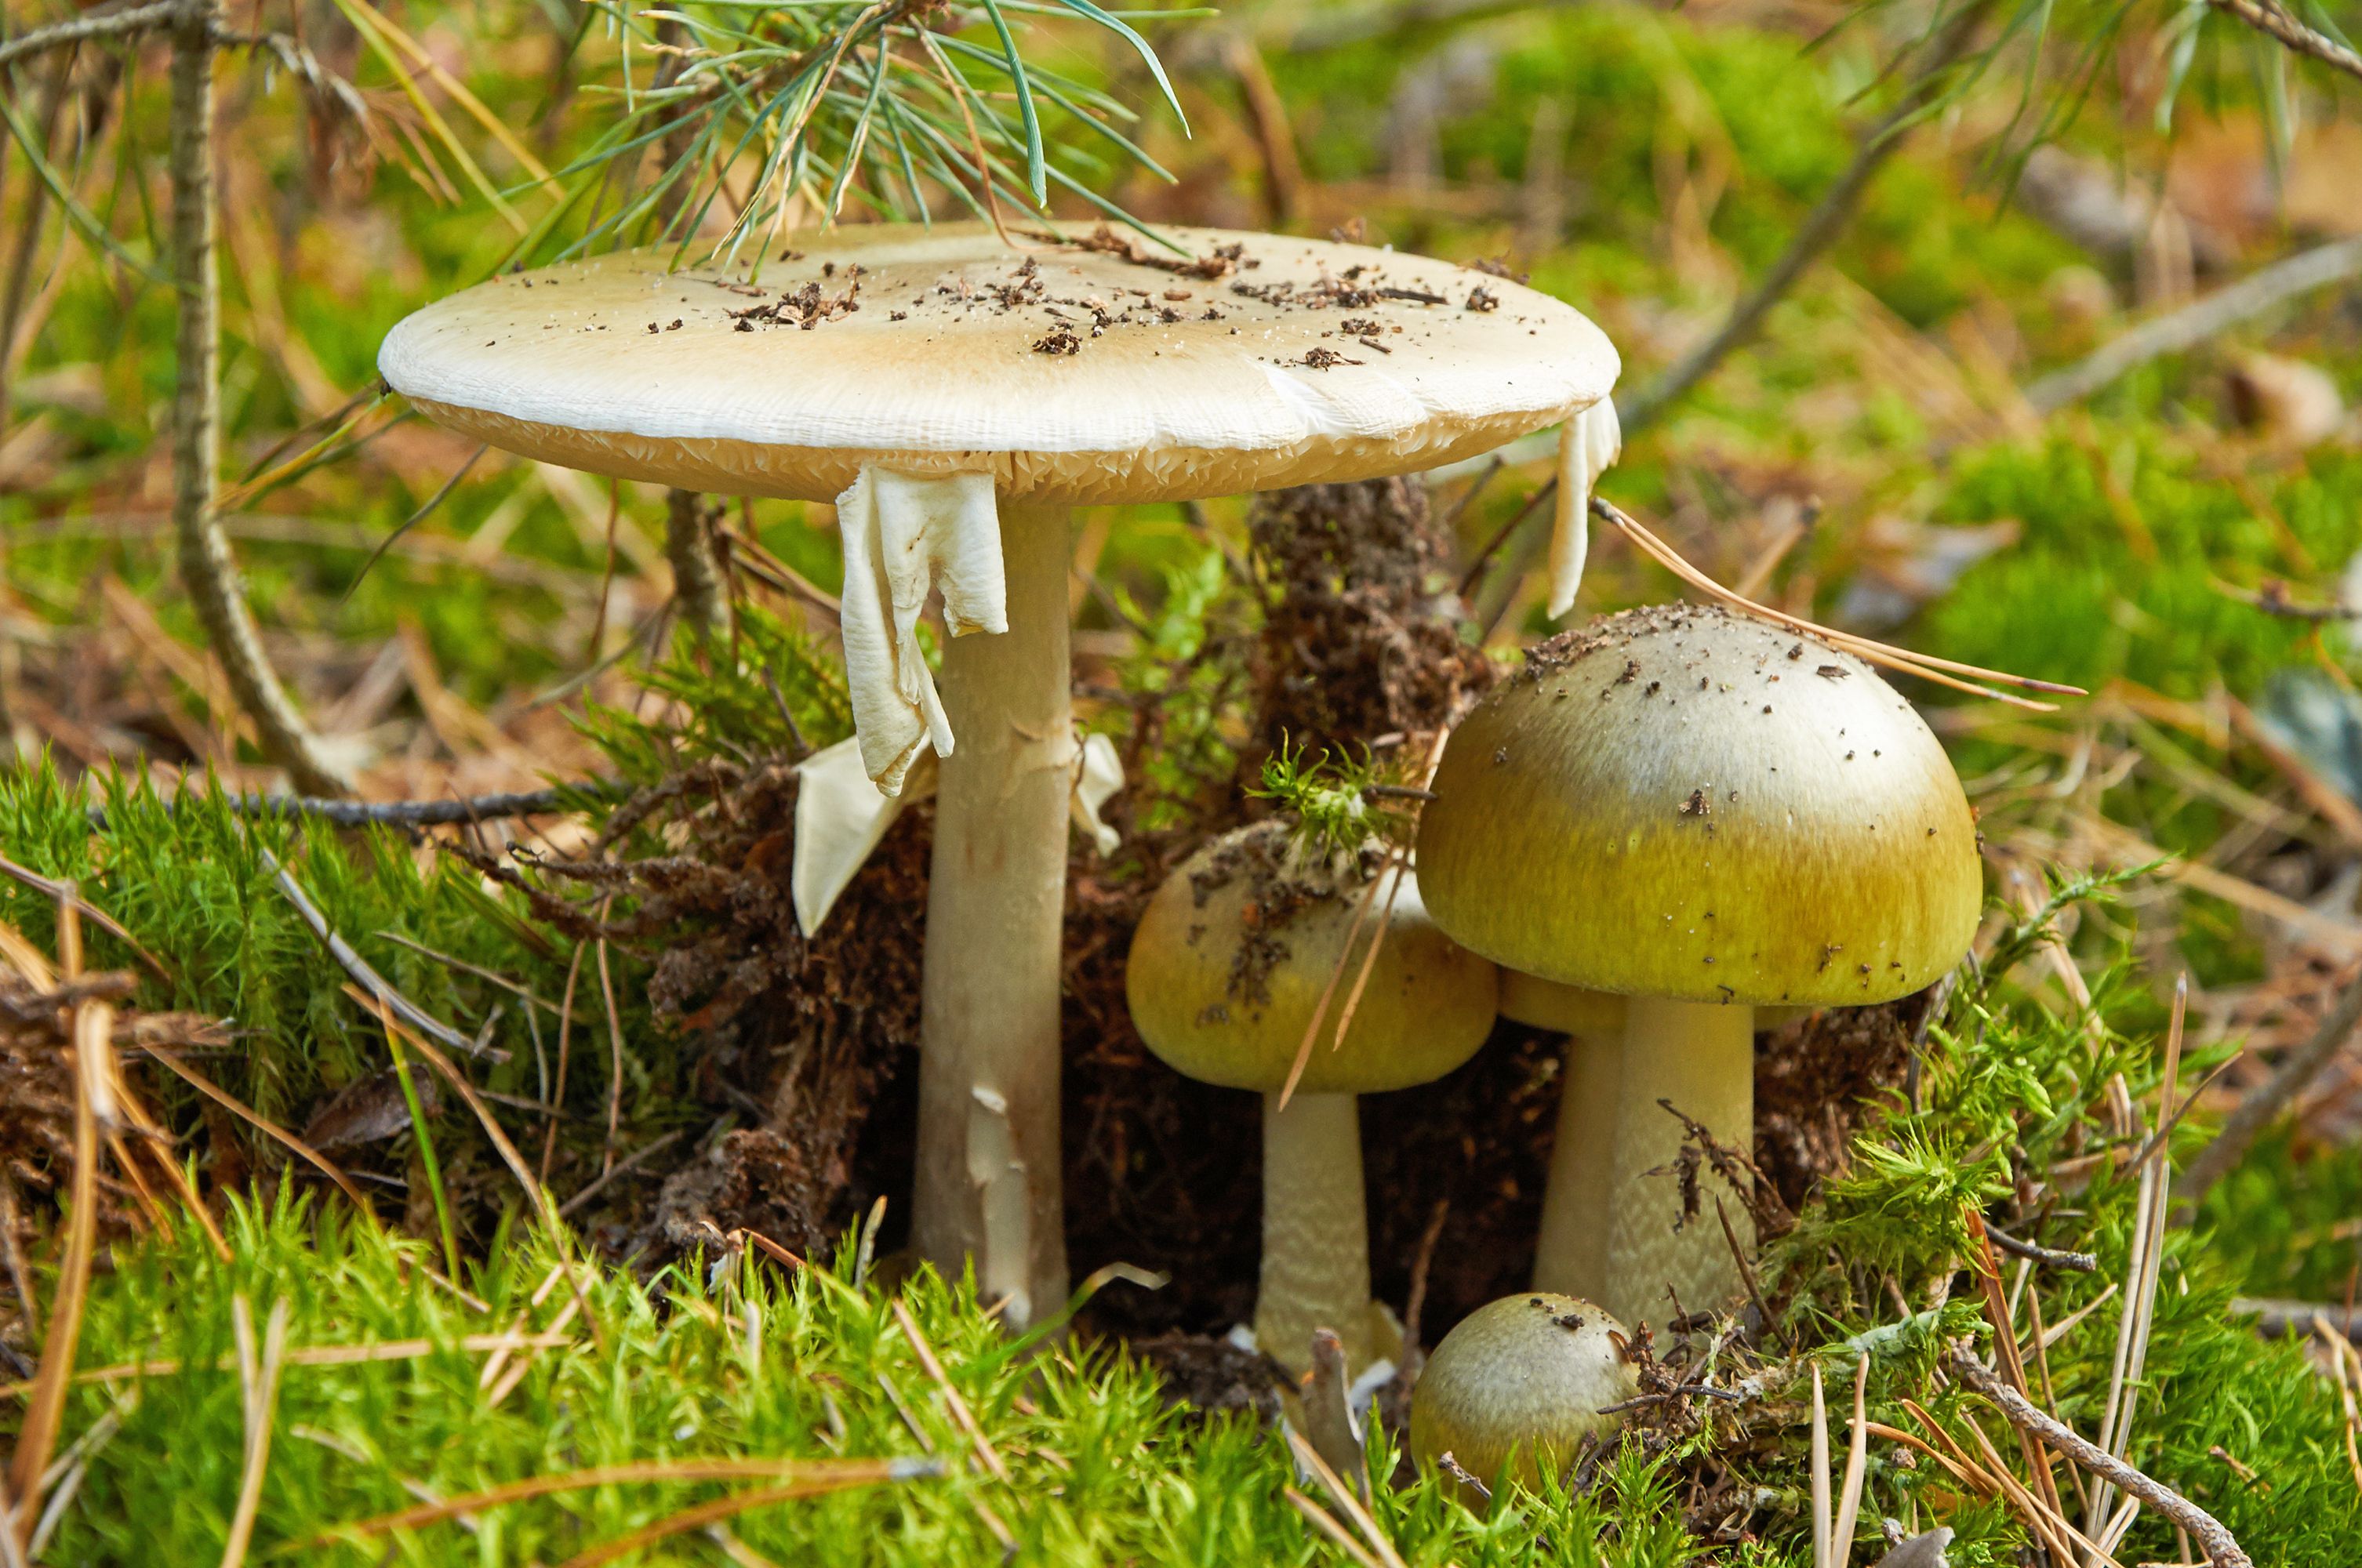 Death cap' wild mushrooms poison 14 in California | Elmira